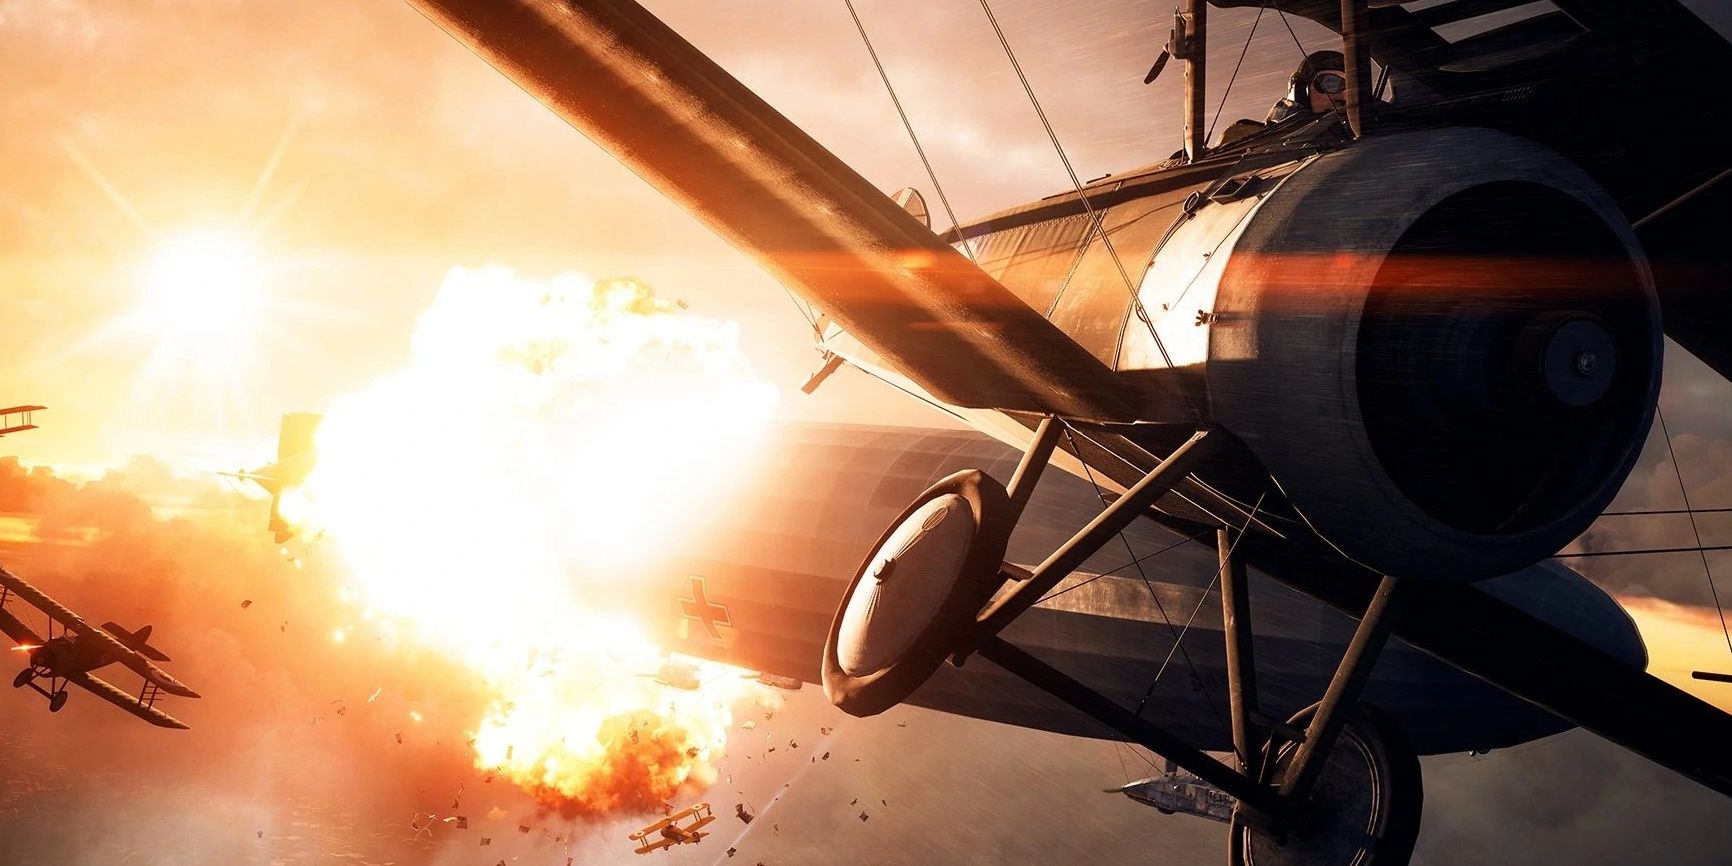 Aerial battle over London in Battlefield 1